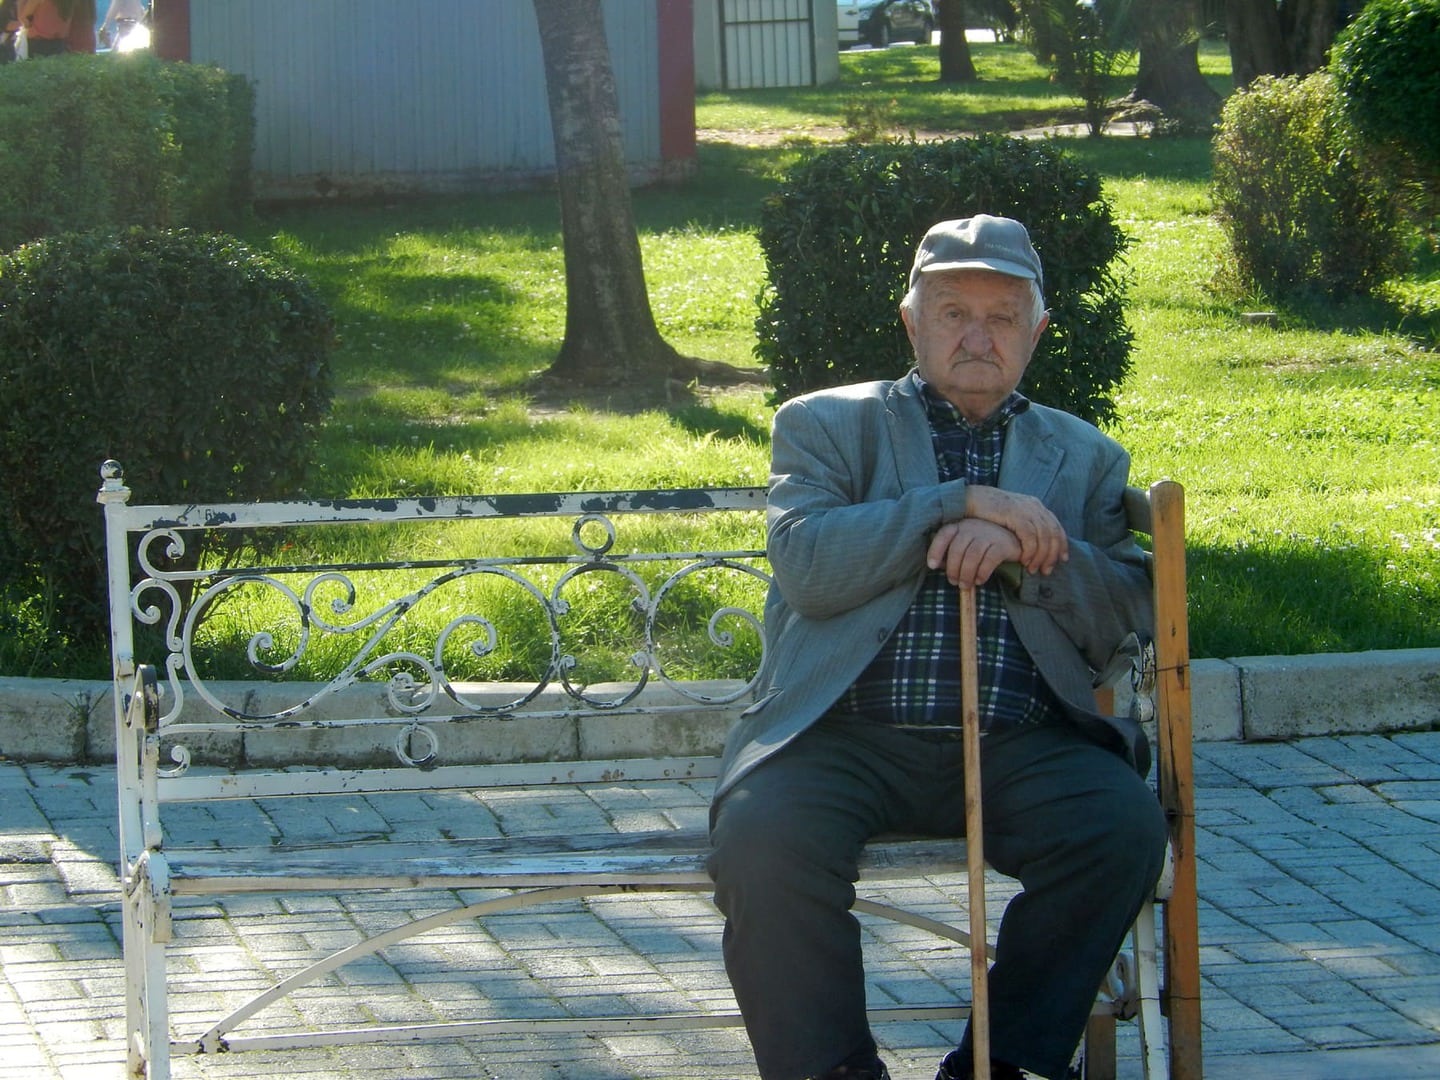 Radreise Griechenland Nordgriechenland - älterer Herr auf einer Bank